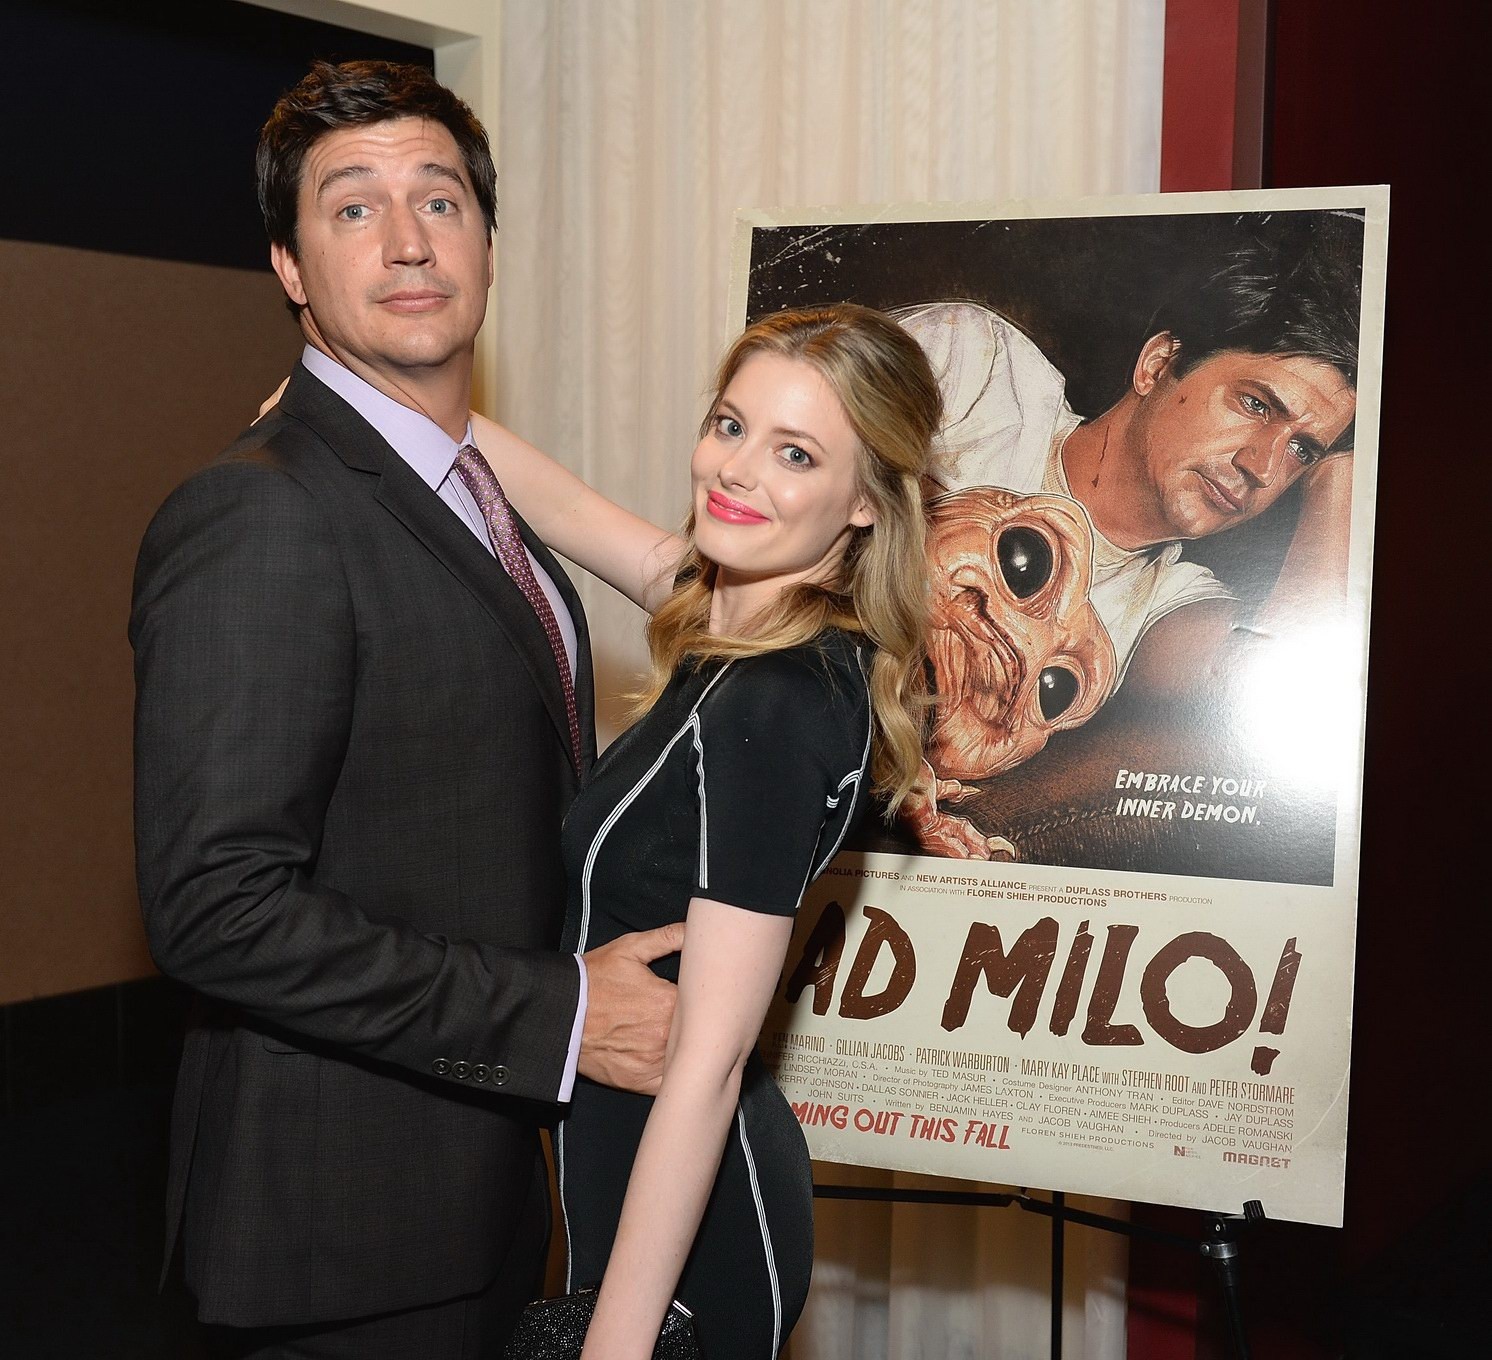 Gillian jacobs con un sujetador en el estreno de 'bad milo' en hollywood
 #75220132